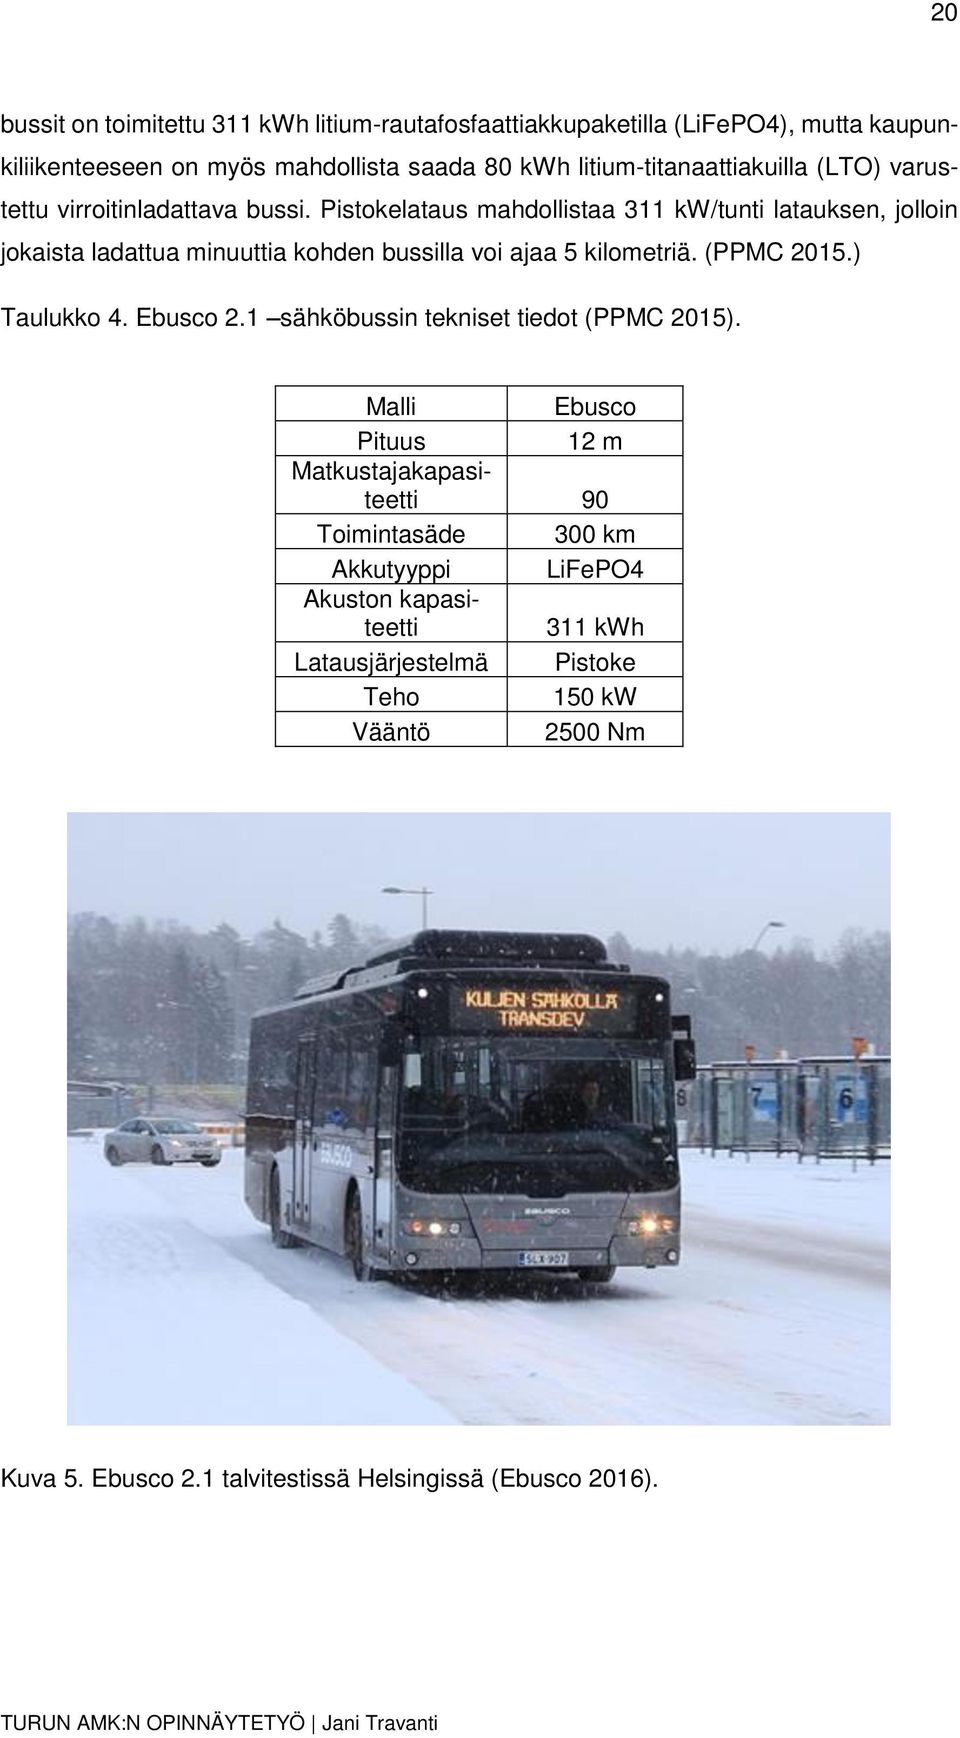 Pistokelataus mahdollistaa 311 kw/tunti latauksen, jolloin jokaista ladattua minuuttia kohden bussilla voi ajaa 5 kilometriä. (PPMC 2015.) Taulukko 4. Ebusco 2.